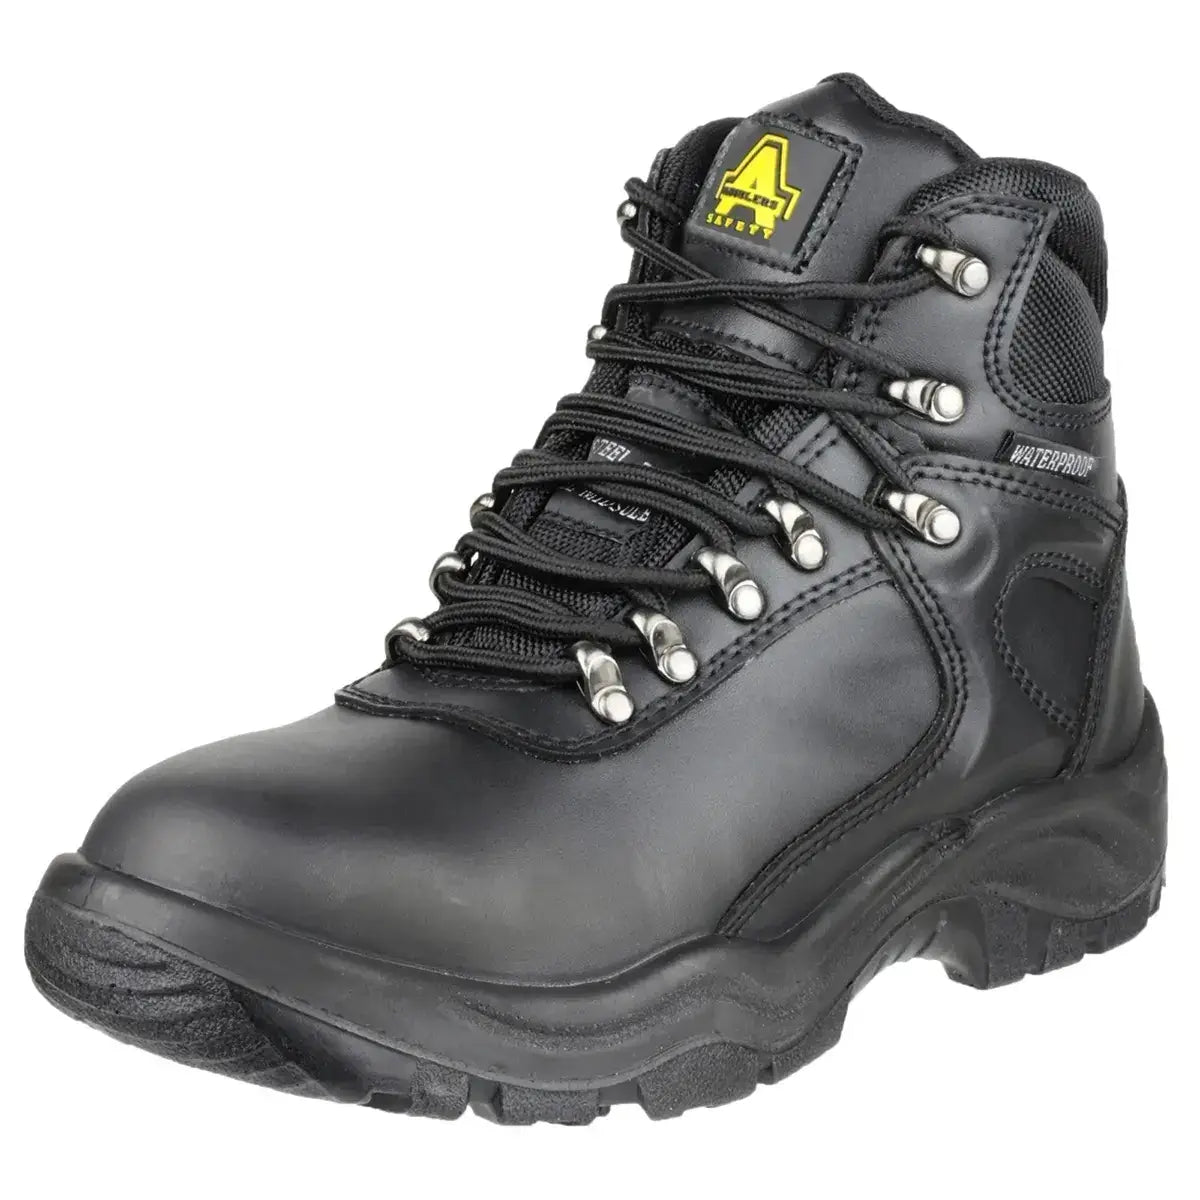 Amblers FS218 Waterproof Steel Toe & Midsole Safety Boots - Shoe Store Direct